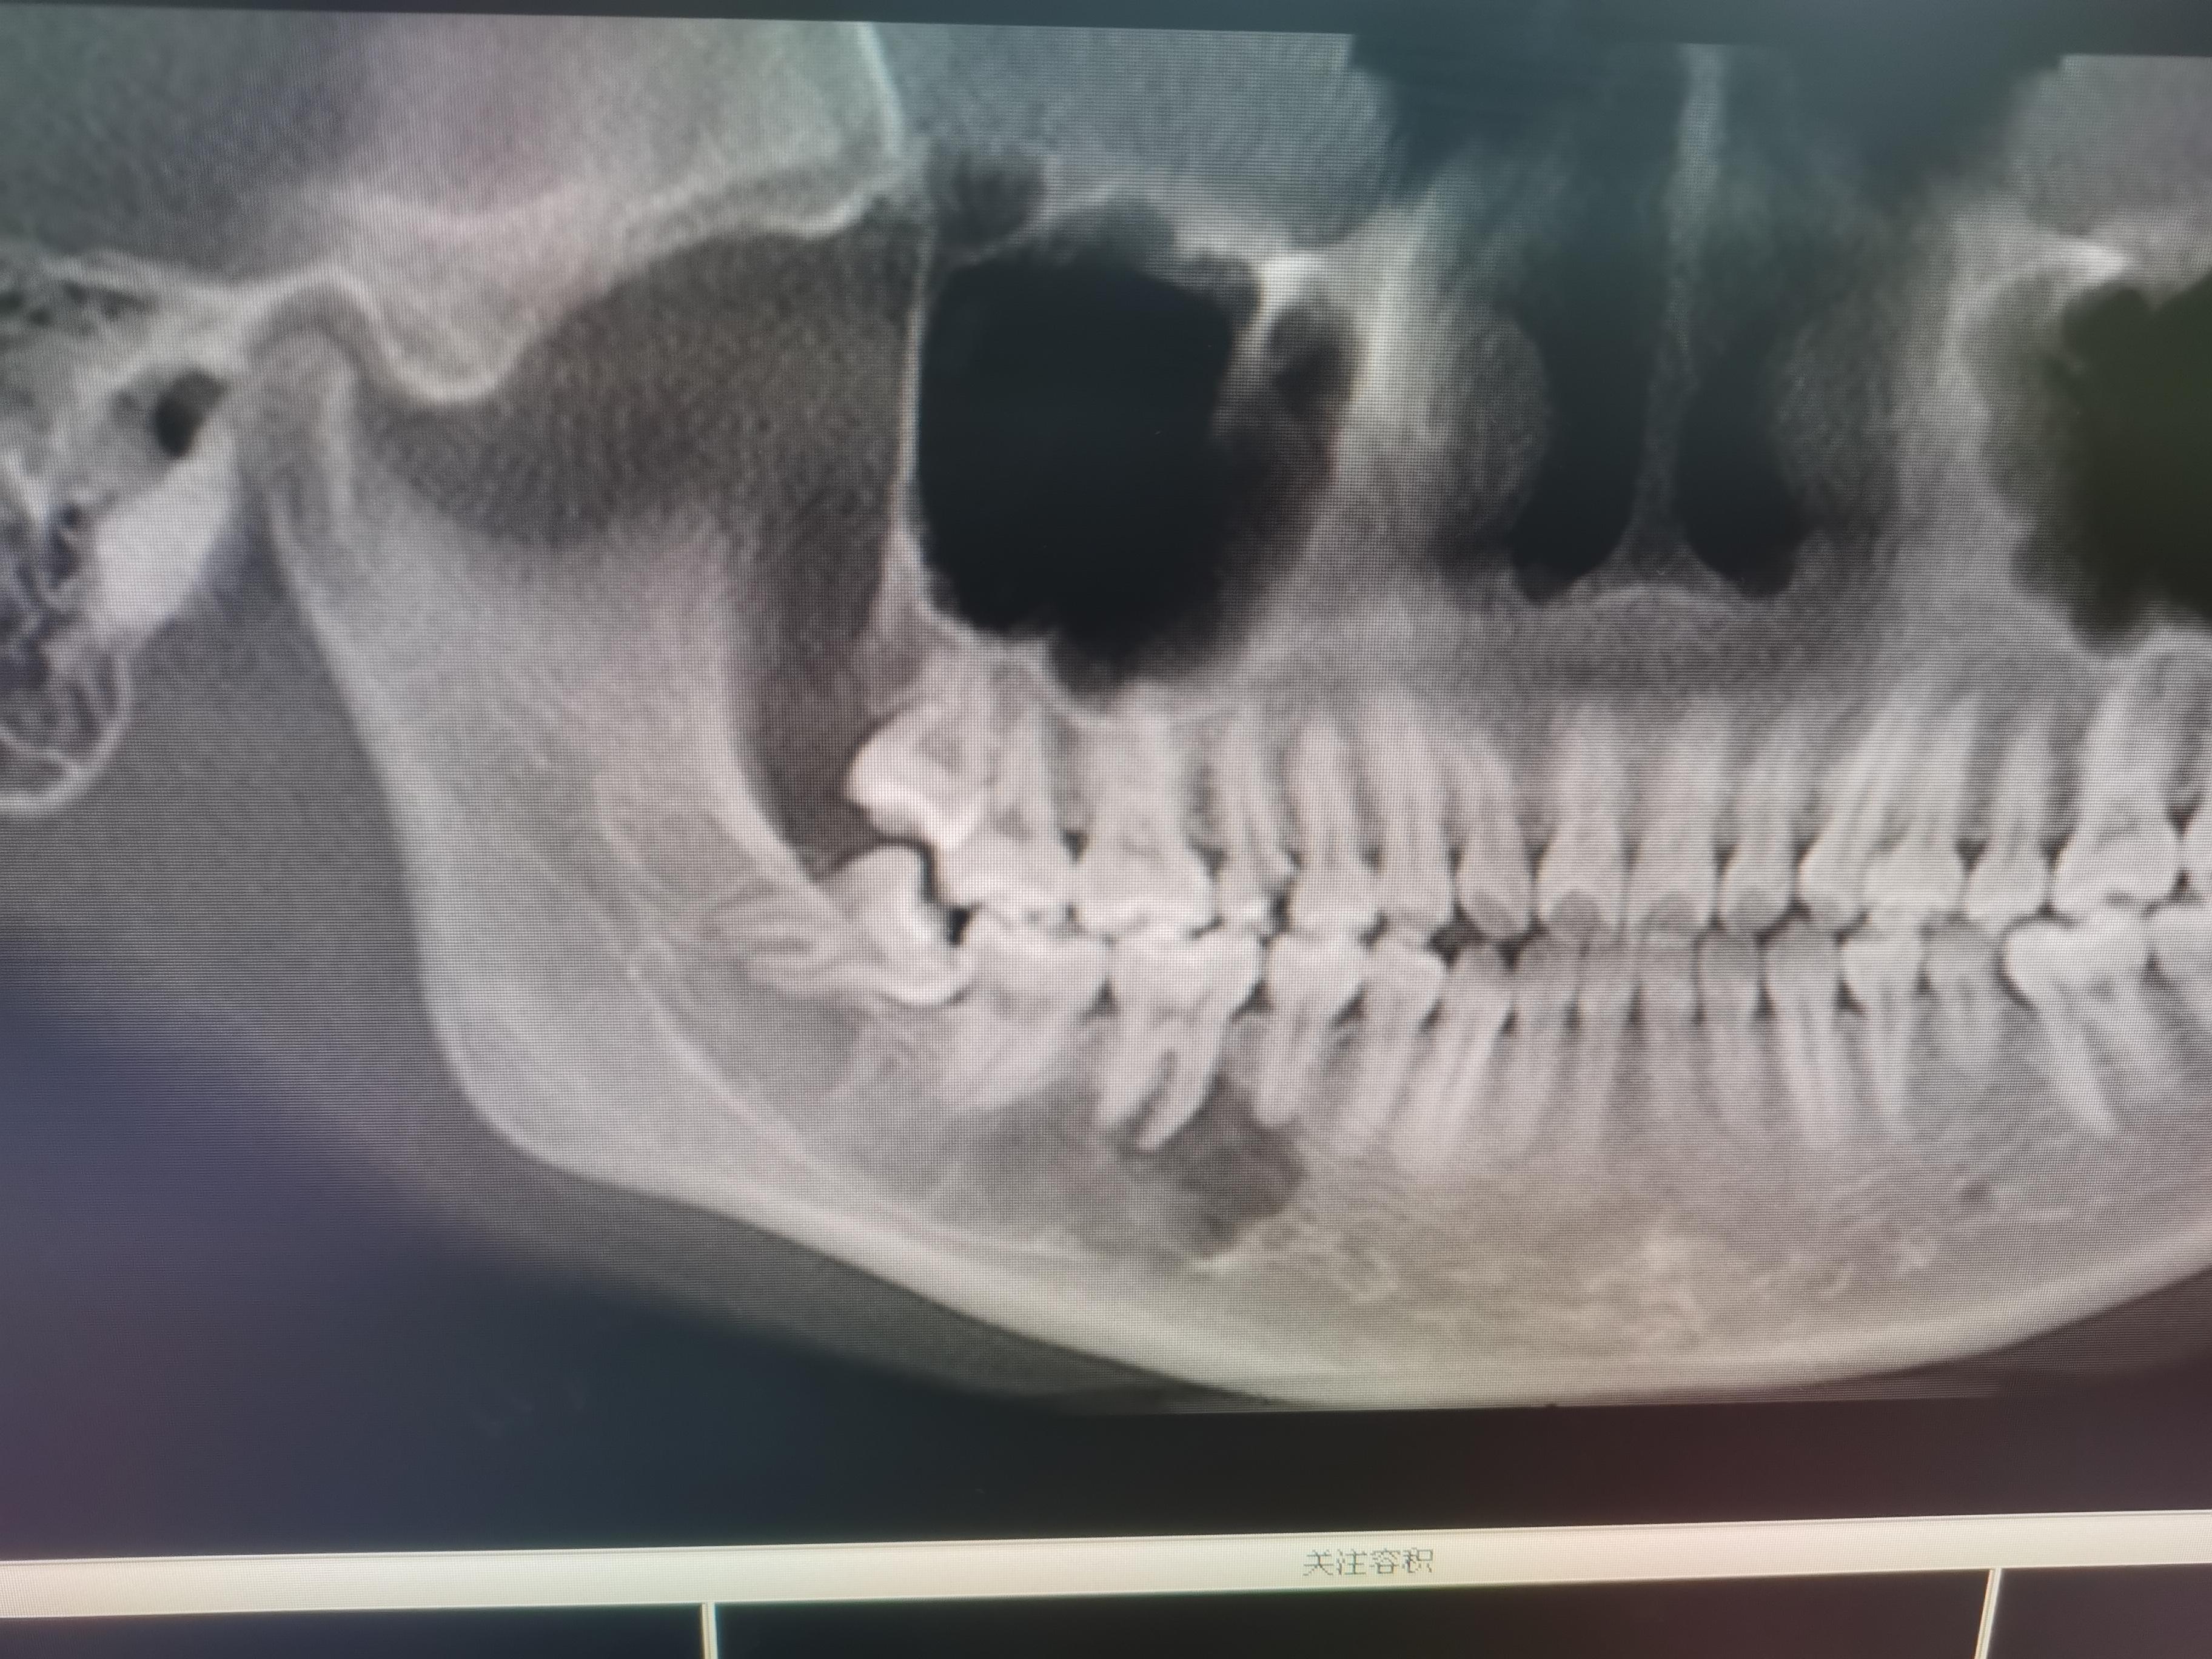 下颌骨的结构与形态特点_颅骨